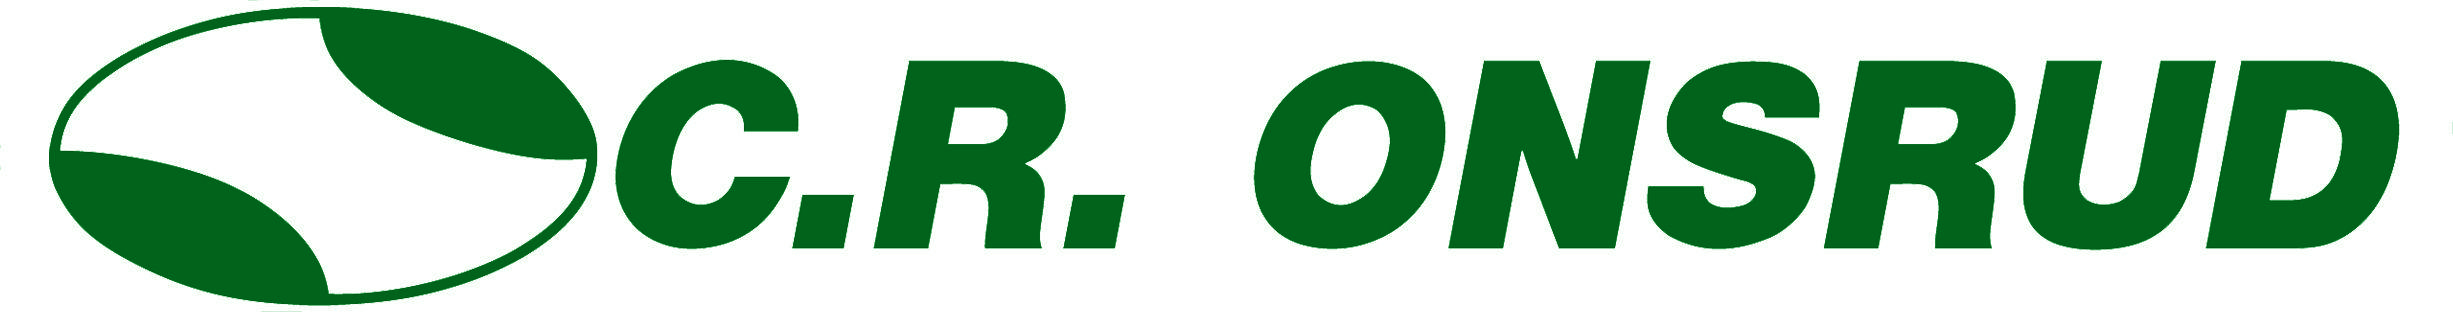 Onsrud Logo - C.R Onsrud Technology Days 2014 - Scarlett Machinery Inc.